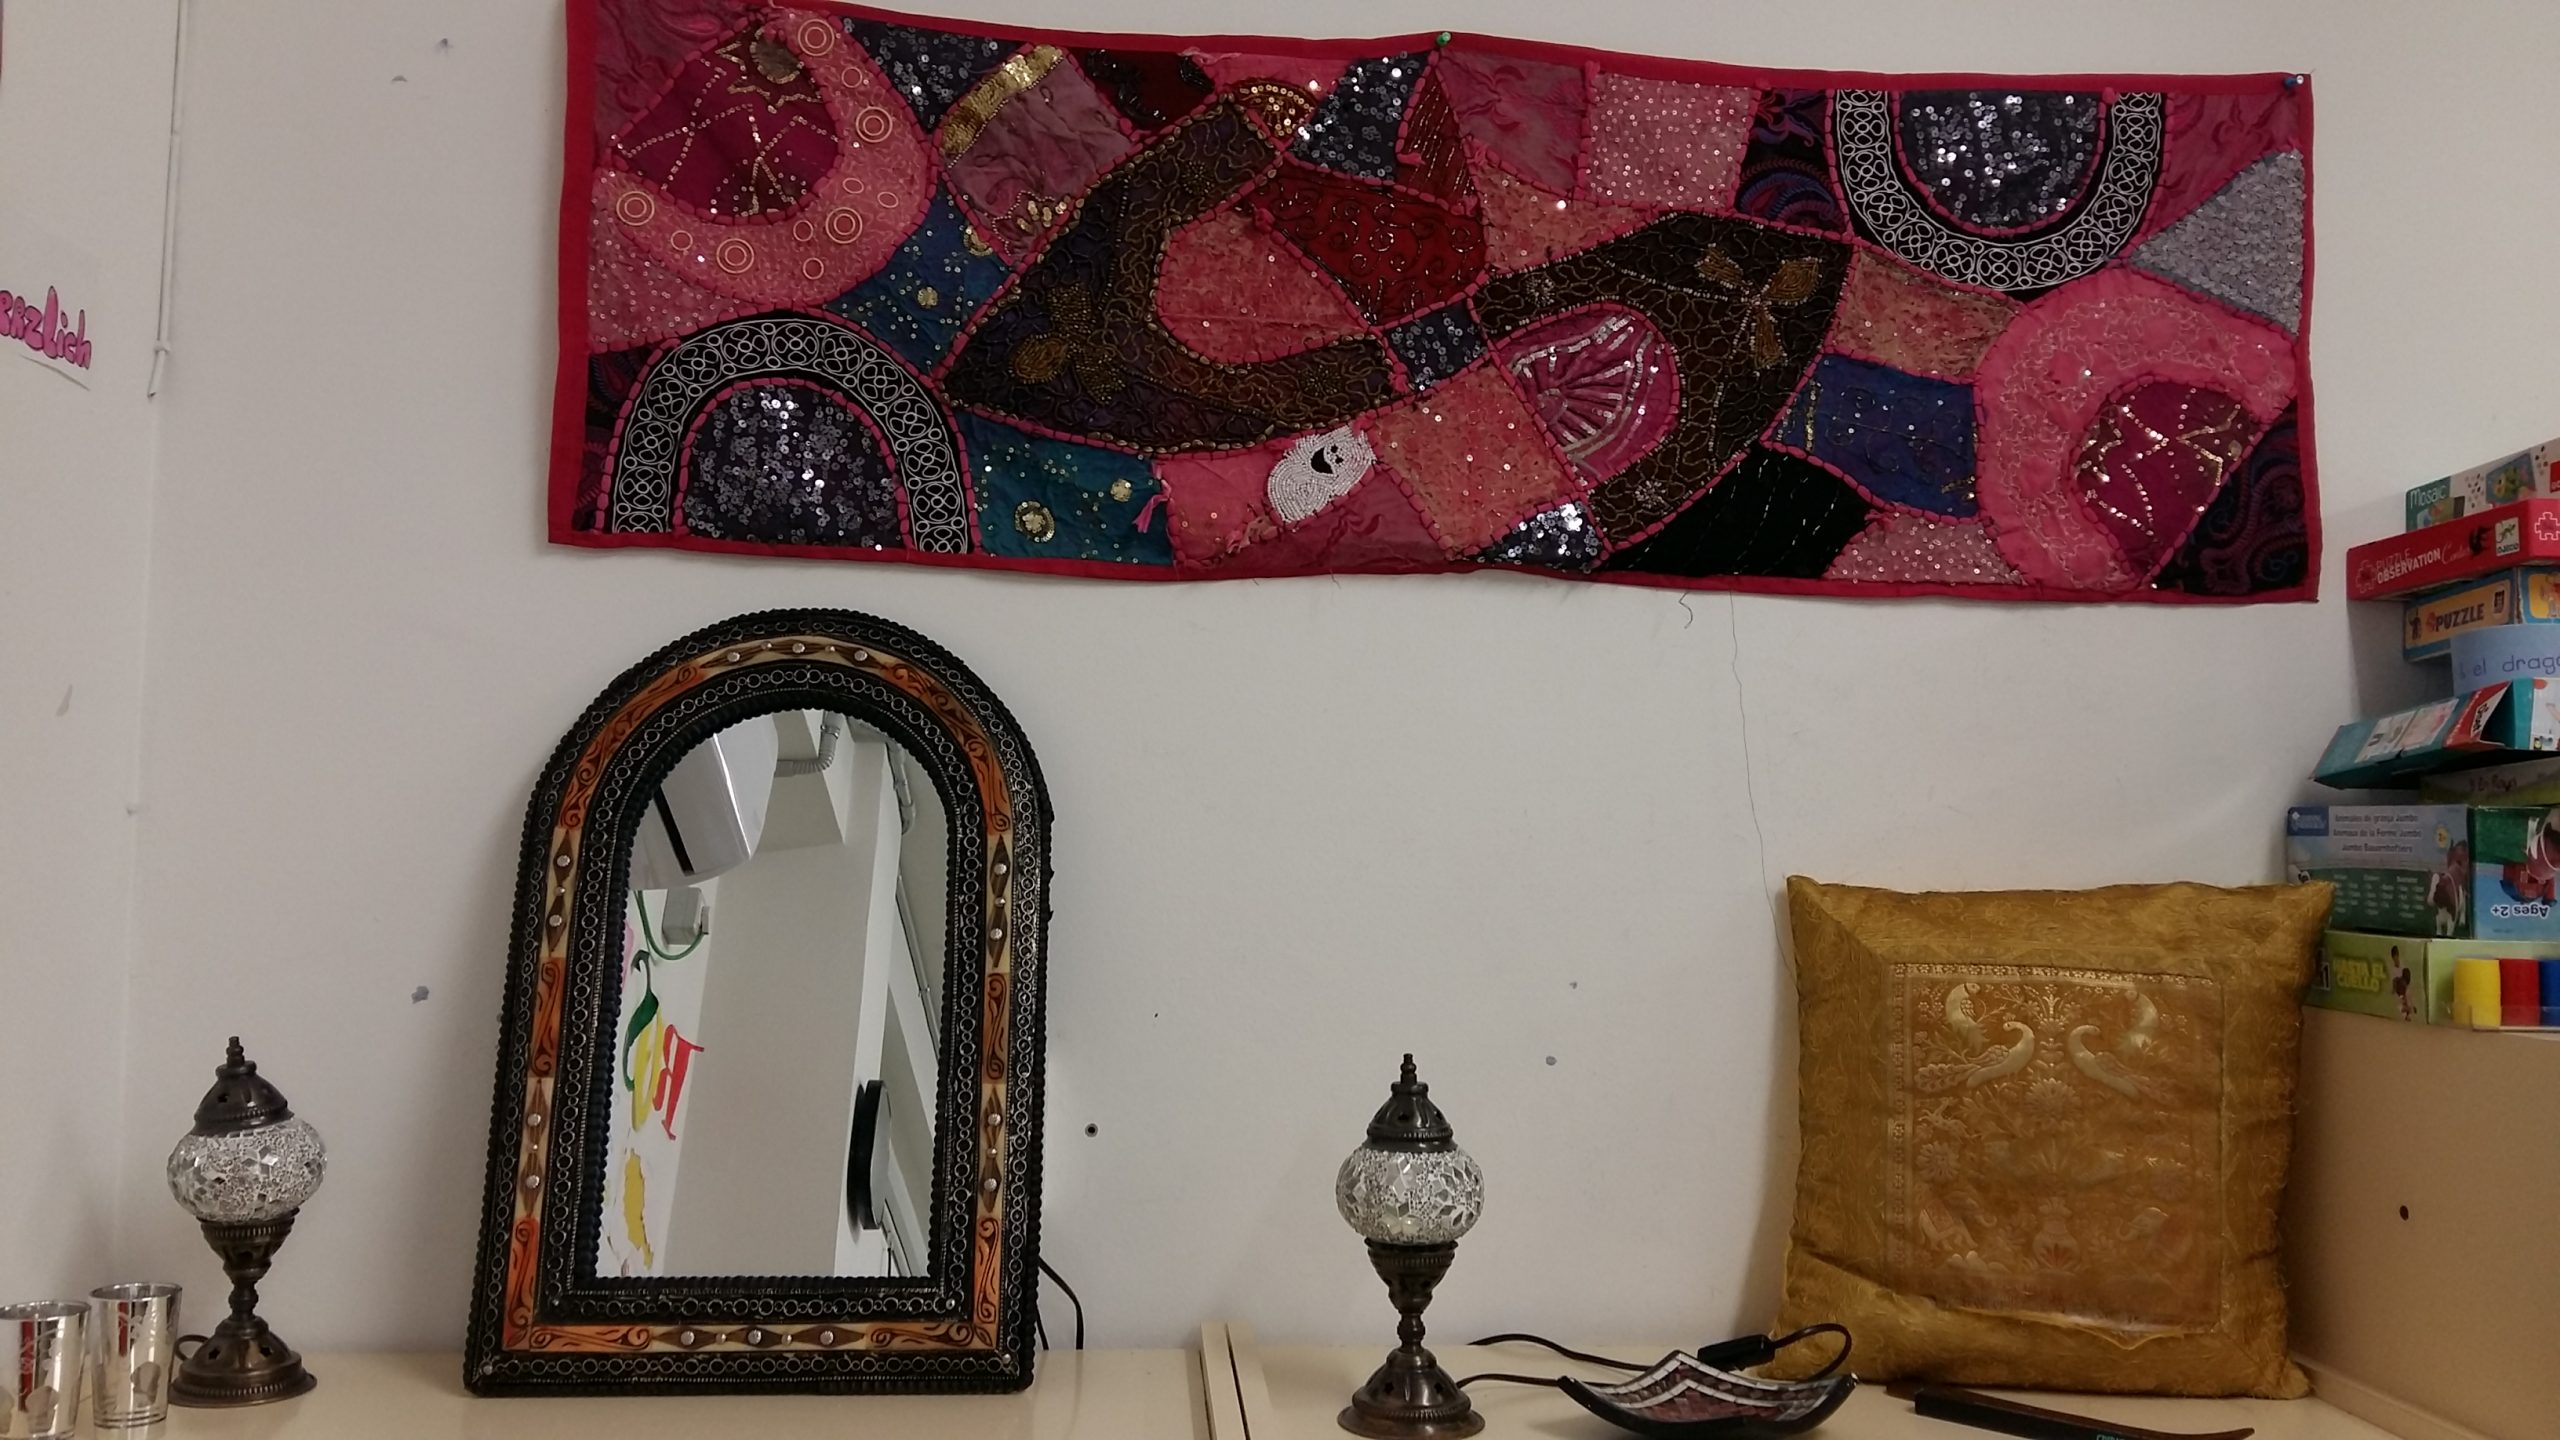 Fotografía del rincón de Marruecos que cuenta con un tapiz, un espejo, lámparas, cojines...